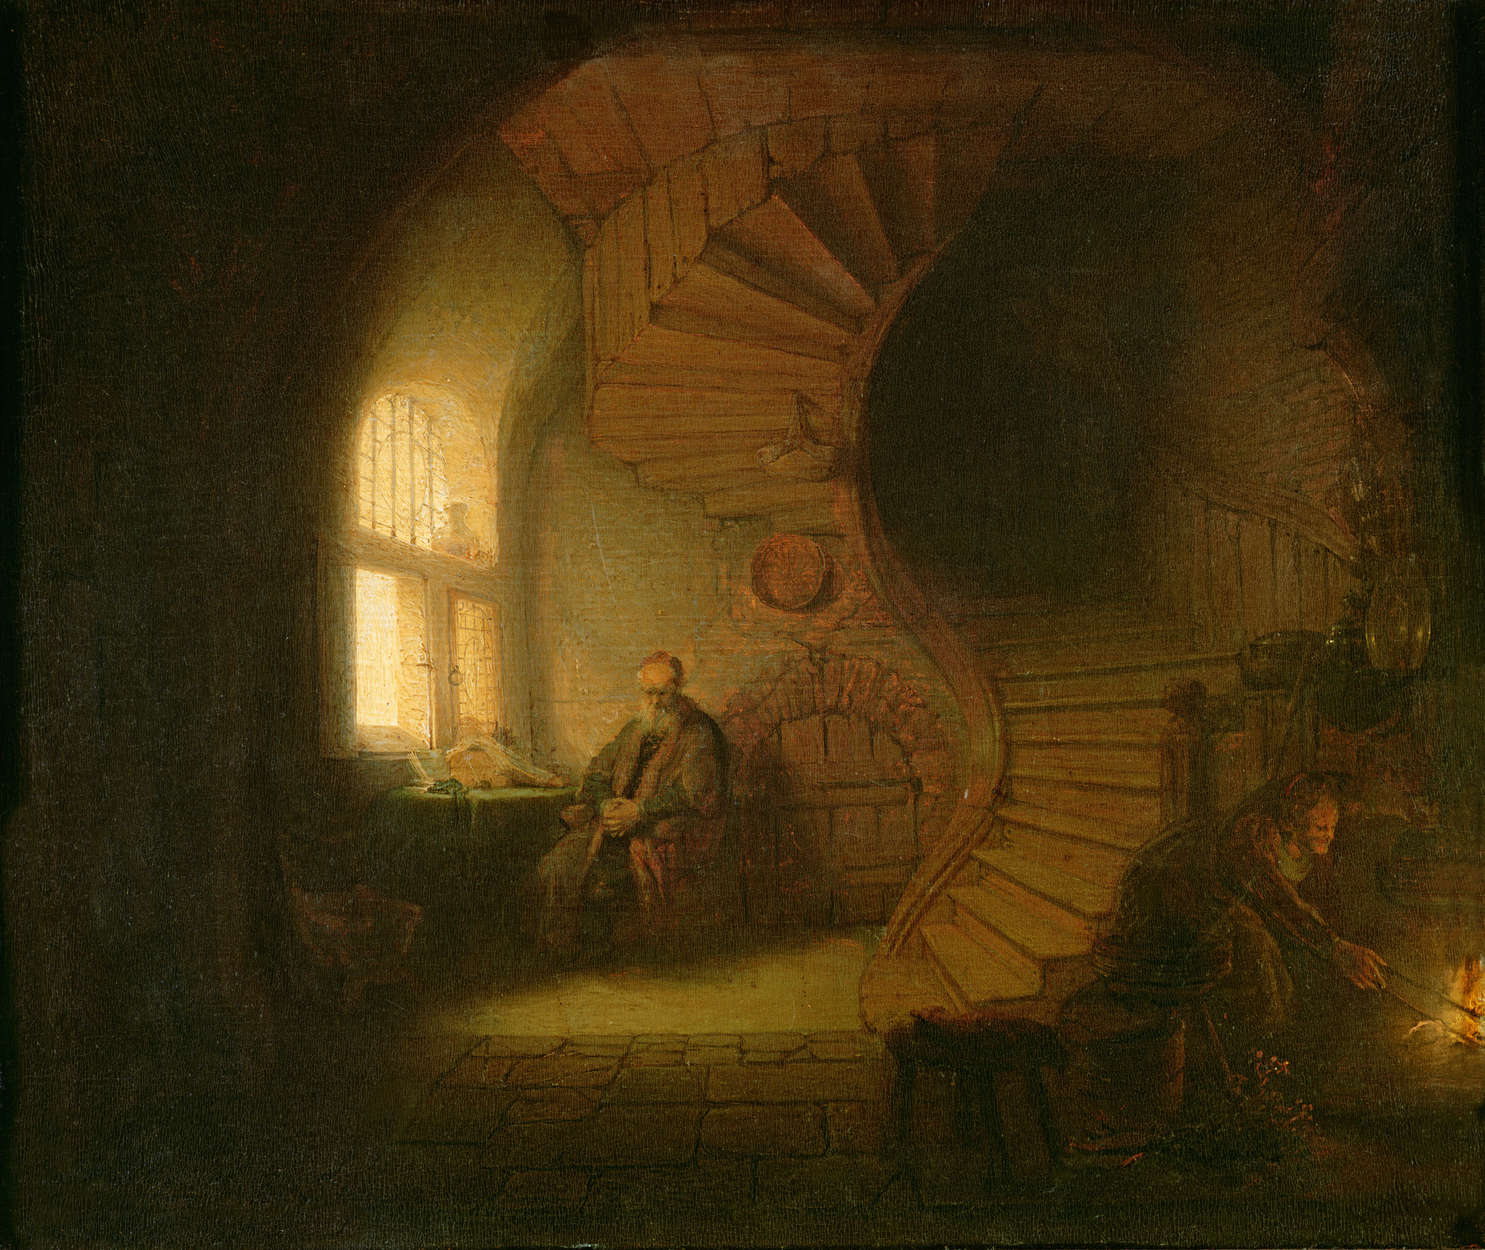             Filosoof in meditatie" muurschildering van Rembrandt van Rijn
        